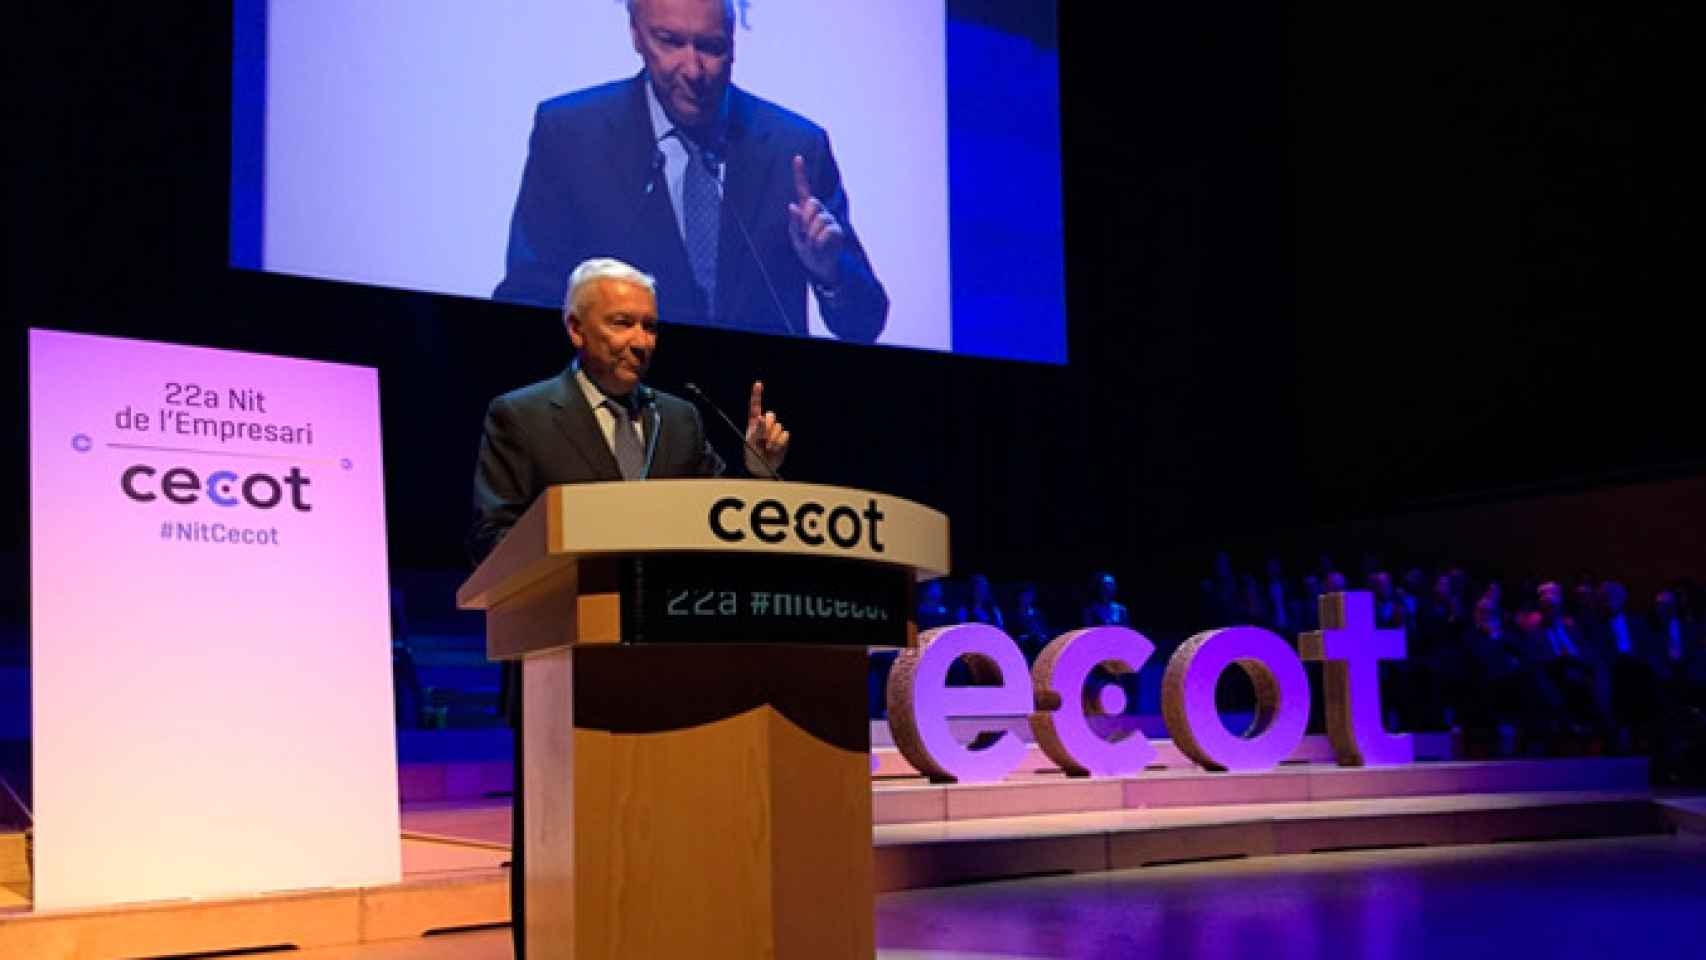 El presidente de Cecot, Antoni Abad, en el discurso inaugural de la 22ª Nit de l'empresari | CG